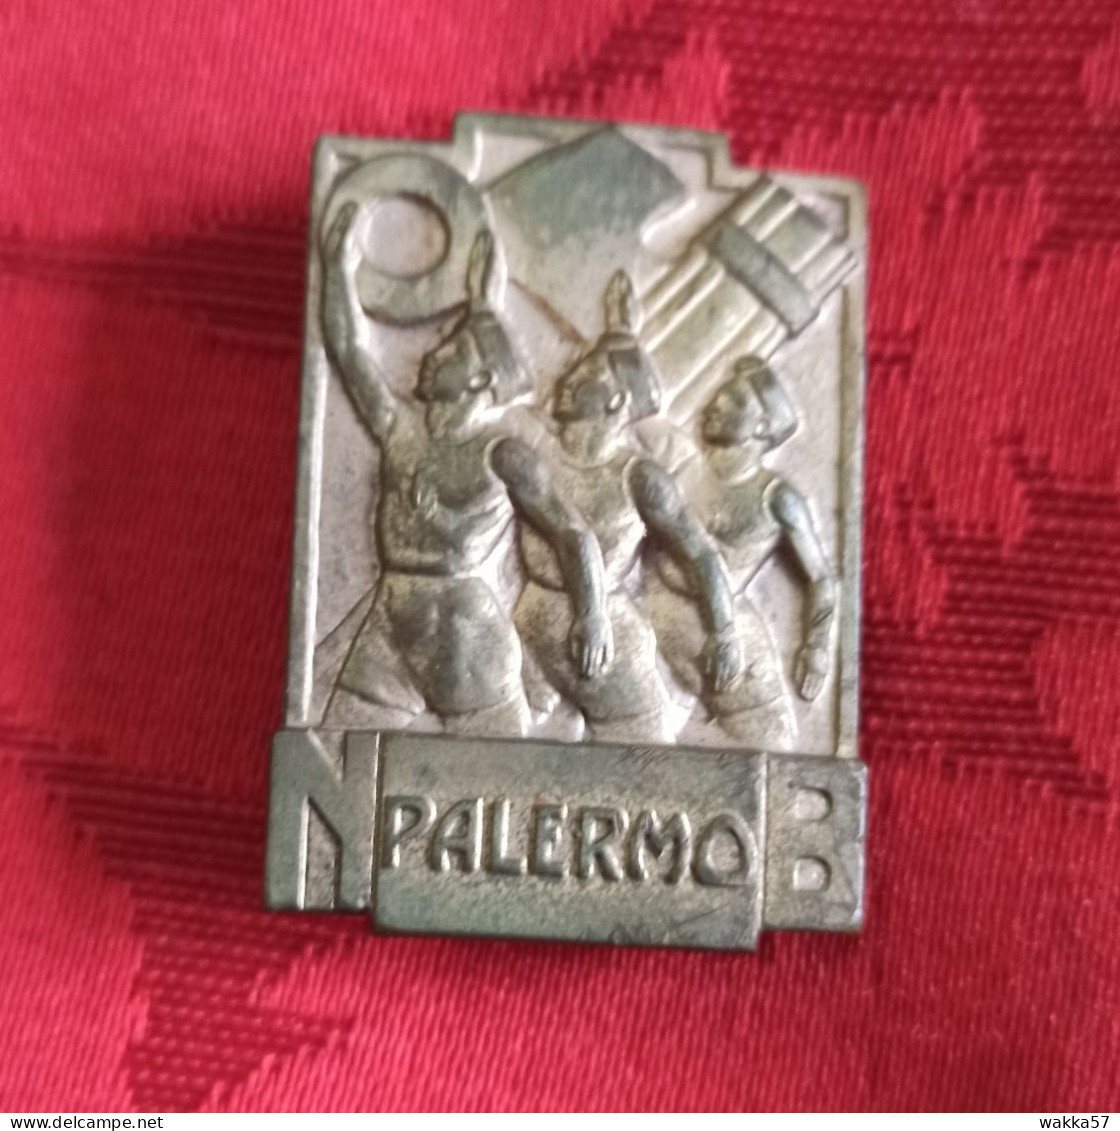 Distintivo Spilla ONB Palermo - Opera Nazionale Balilla - Mortillaro - Army